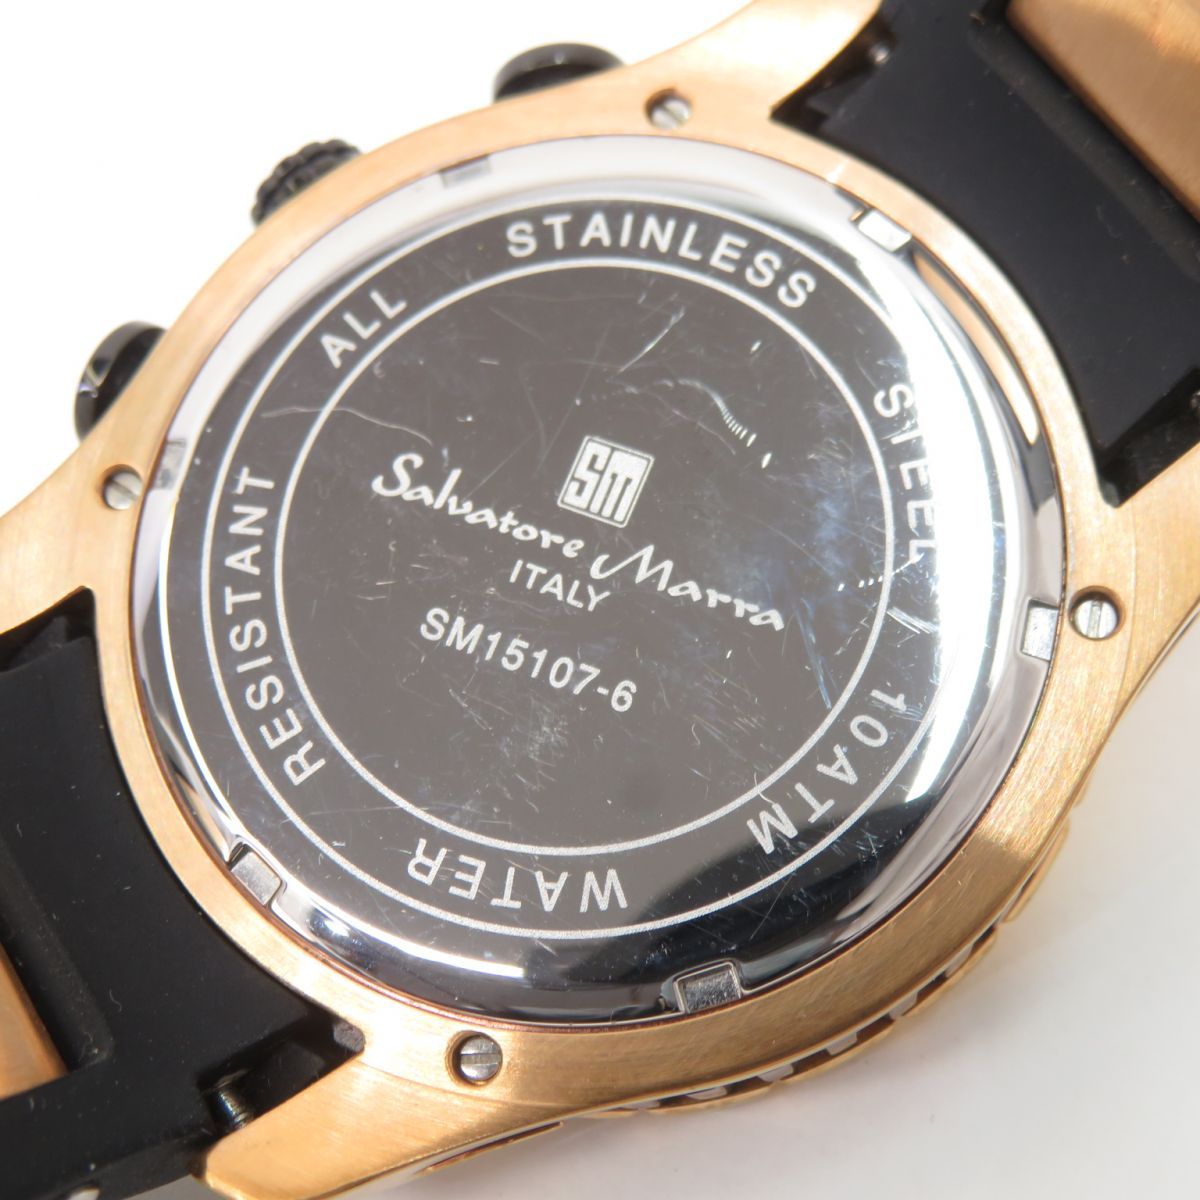 Salvatore Marra サルバトーレマーラ SM15107-6 クォーツ 腕時計 ※中古 - メルカリ